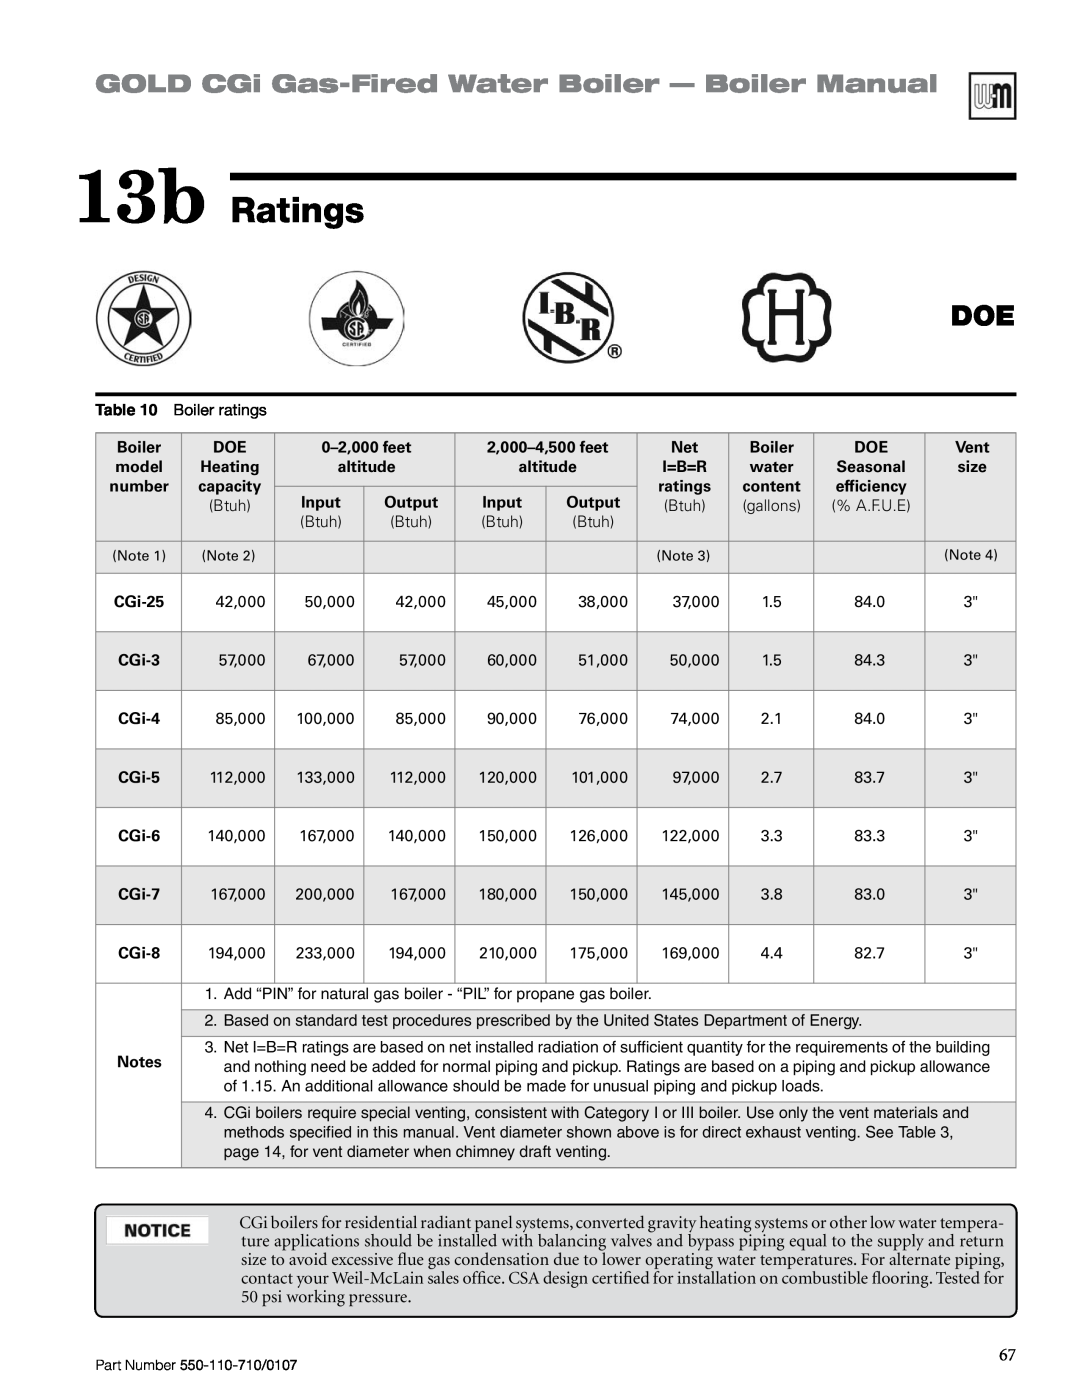 Weil-McLain Series 2 manual 13b Ratings, GOLD CGi Gas-FiredWater Boiler - Boiler Manual 